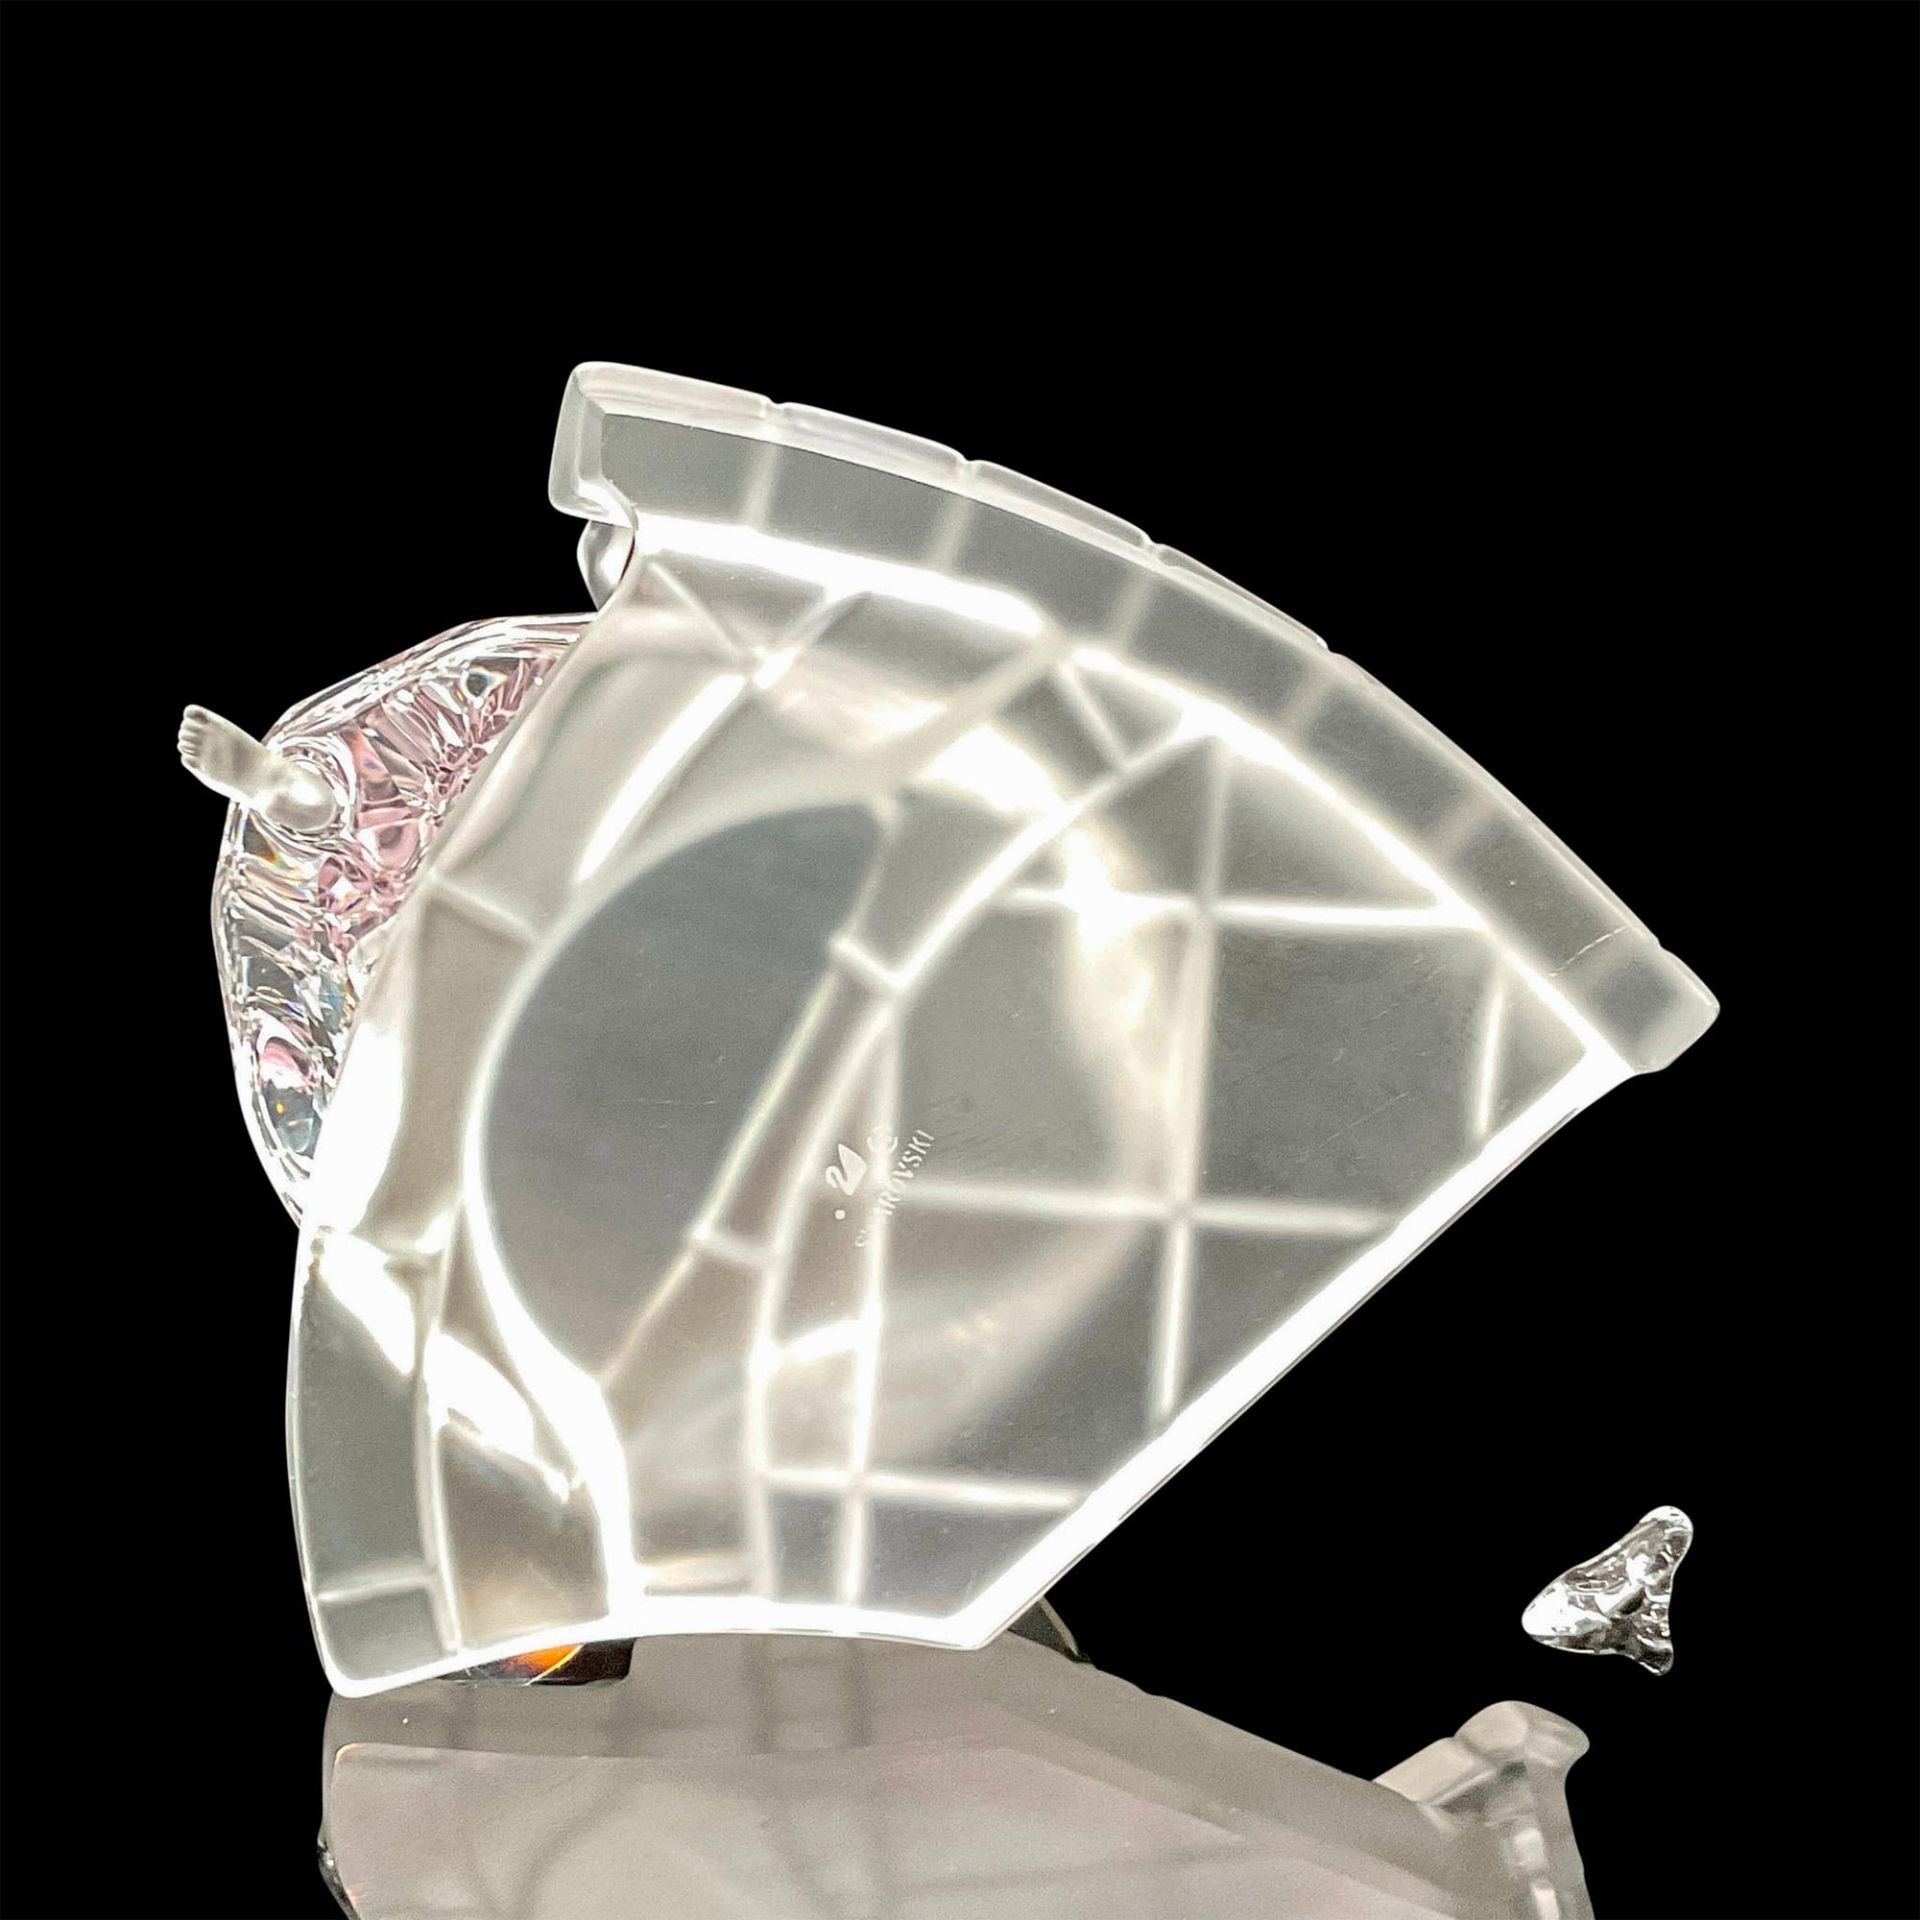 Swarovski Crystal Figurine, Cinderella with Glass Slipper - Image 4 of 5